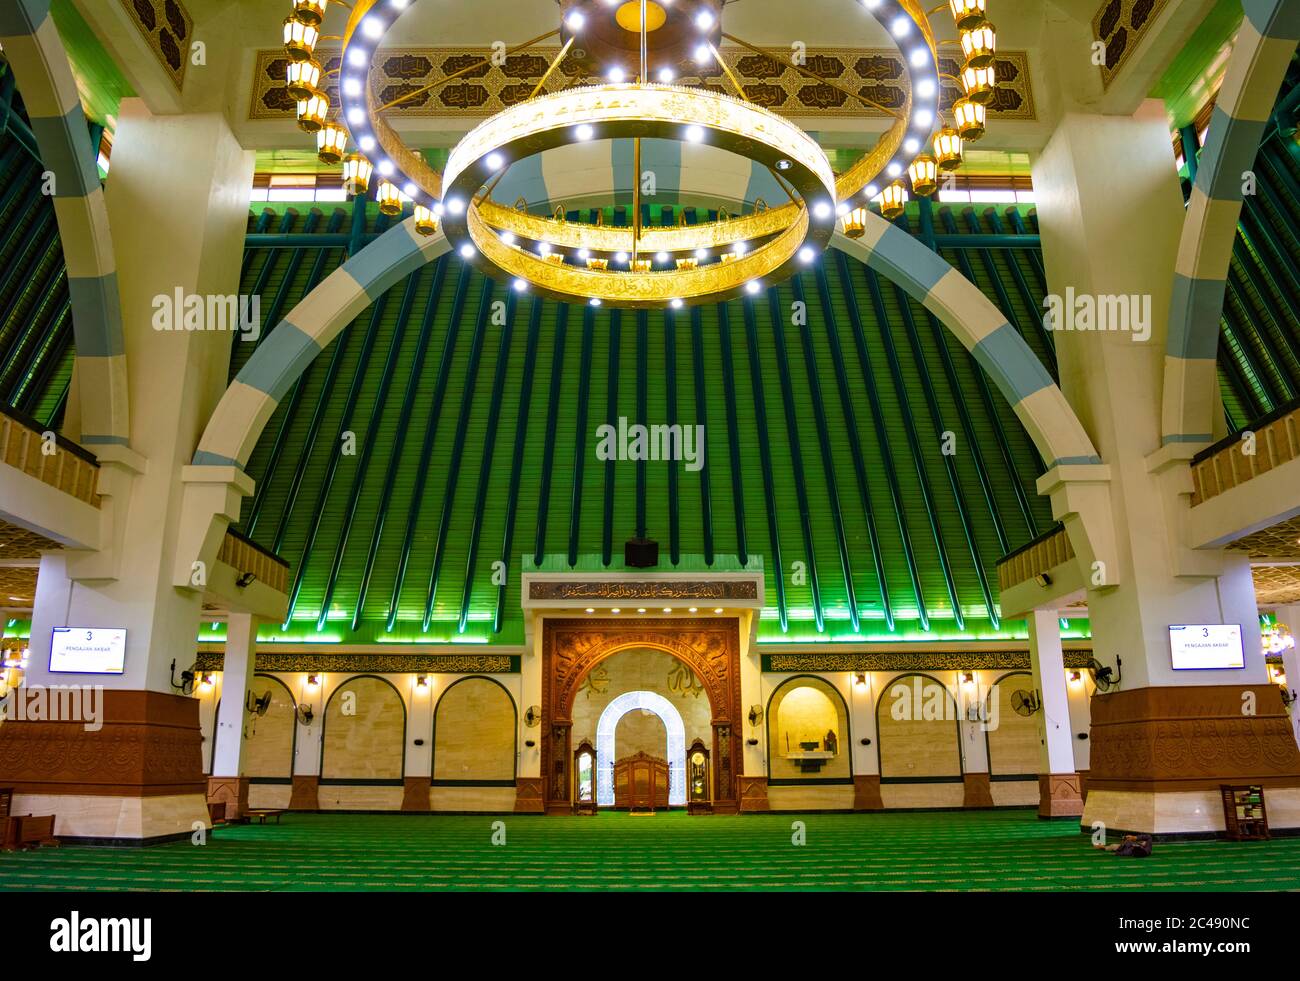 Semarang, Indonesia - CIRCA Nov 2019: Interior of The Great Mosque of Central Java (Masjid Agung Jawa Tengah). Stock Photo